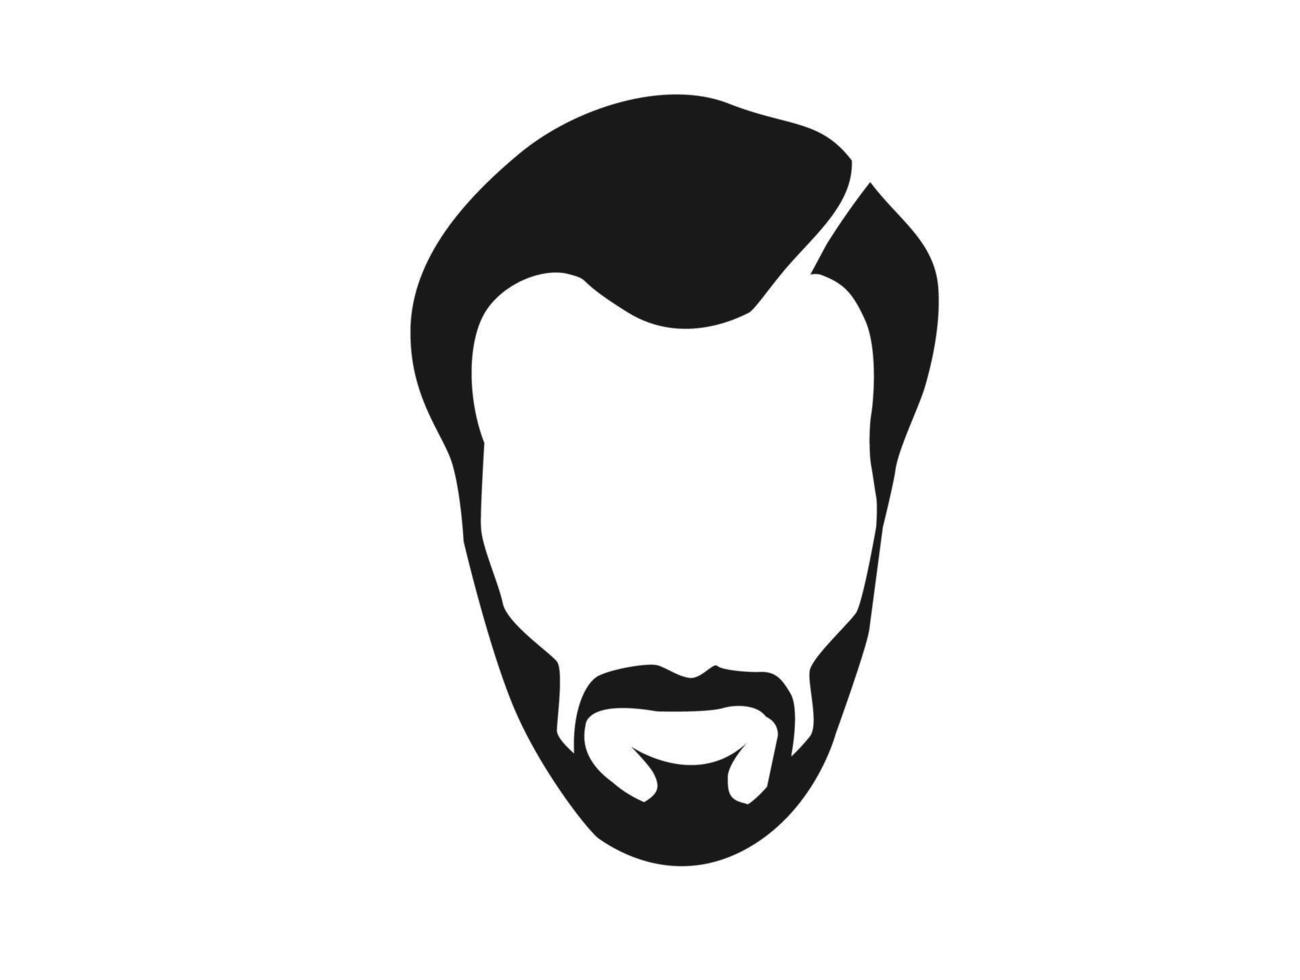 Bearded hipster face black silhouette. Vector illustration